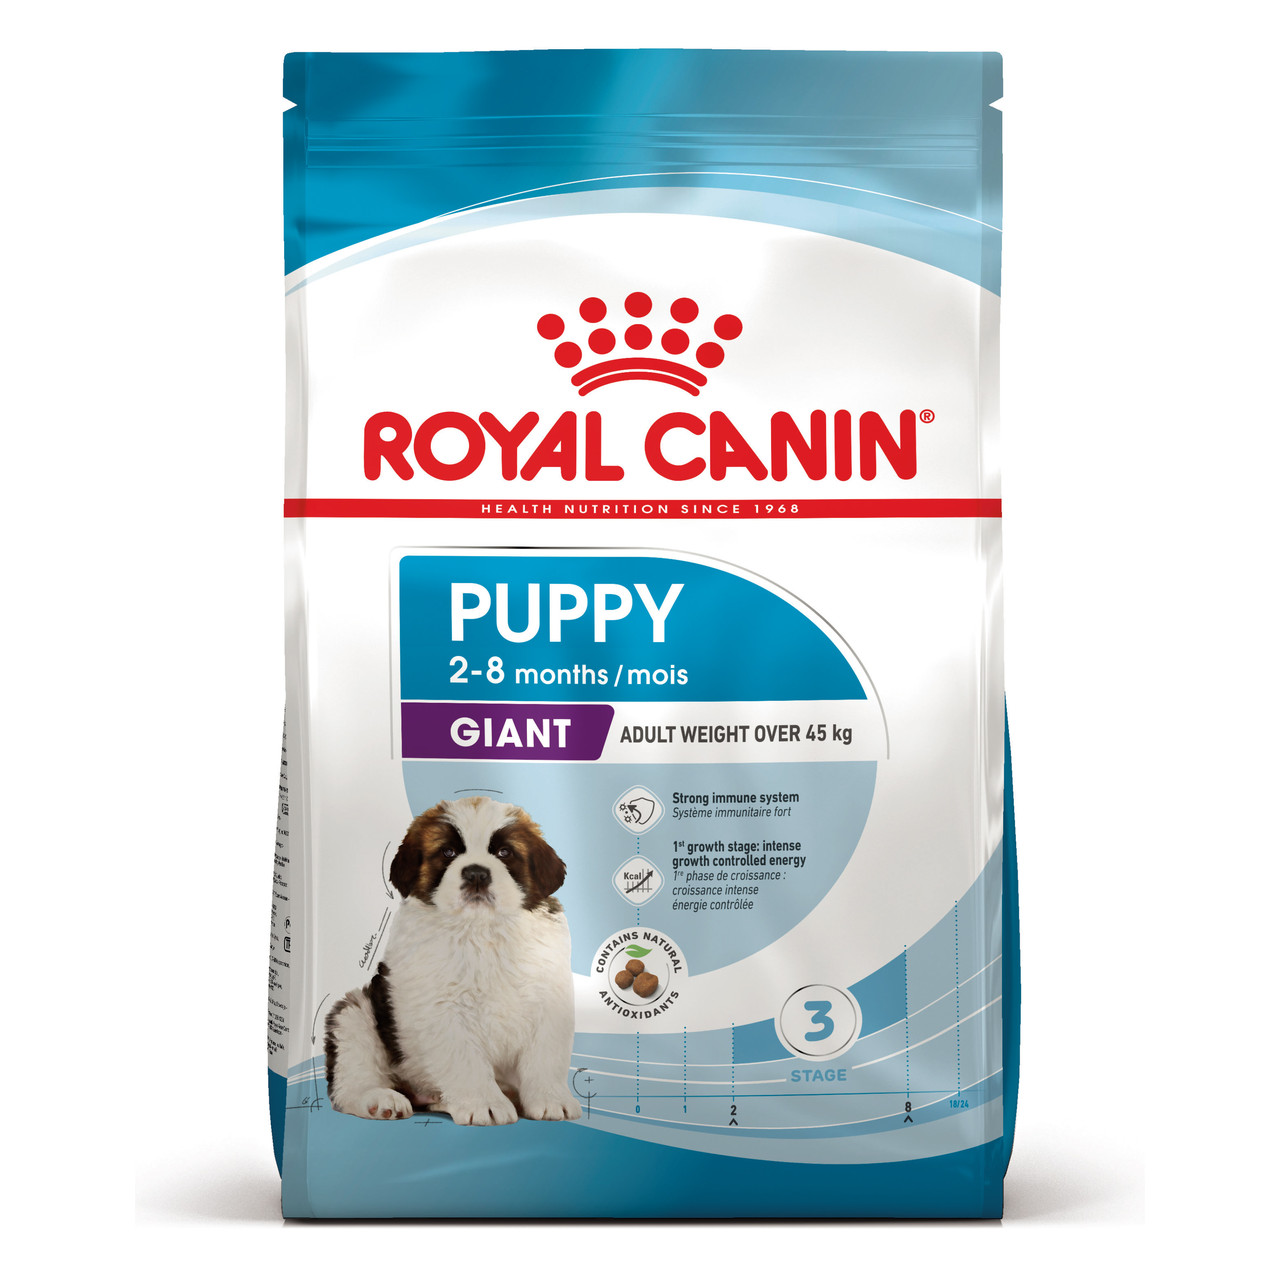 Royal Canin Giant Puppy сухий корм для щенят гігантських порід від 2-8 місяців, 17КГ